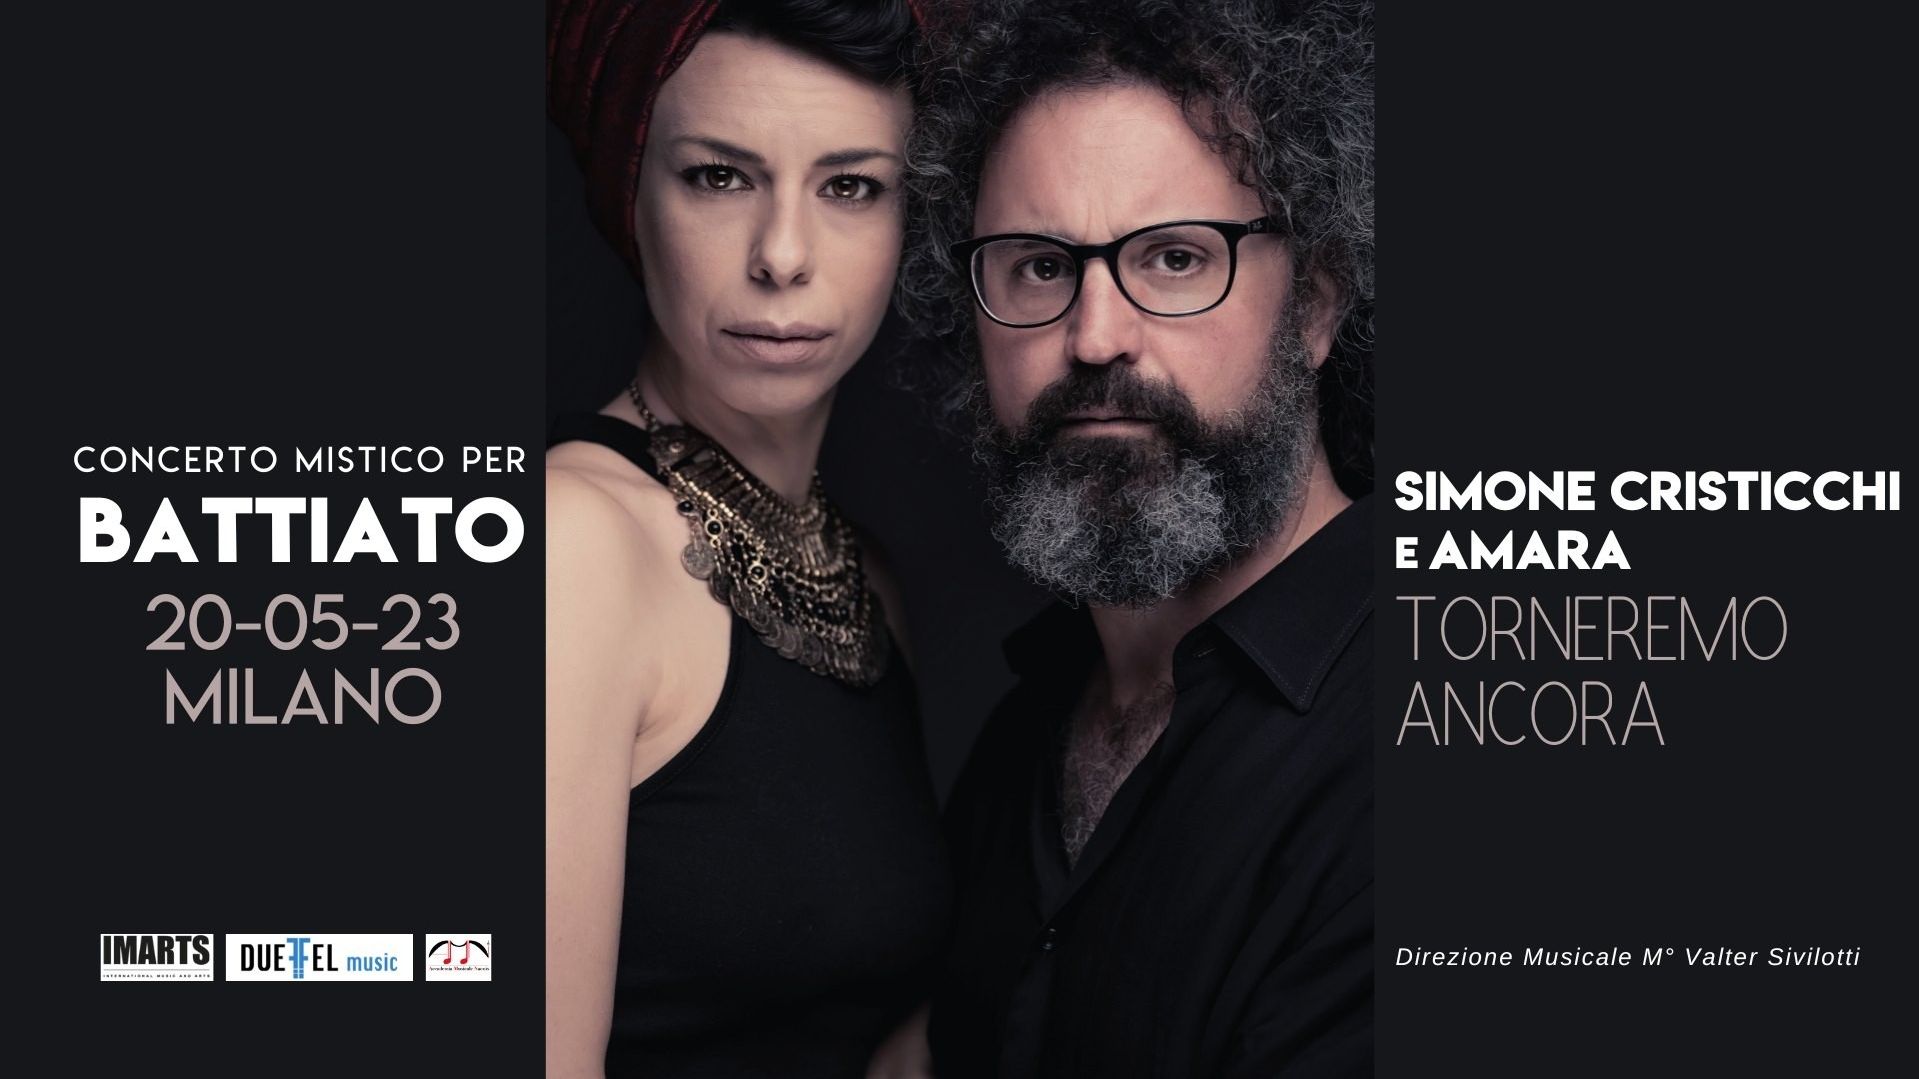 Simone Cristicchi e Amara | Torneremo ancora. Concerto mistico per Battiato | Milano